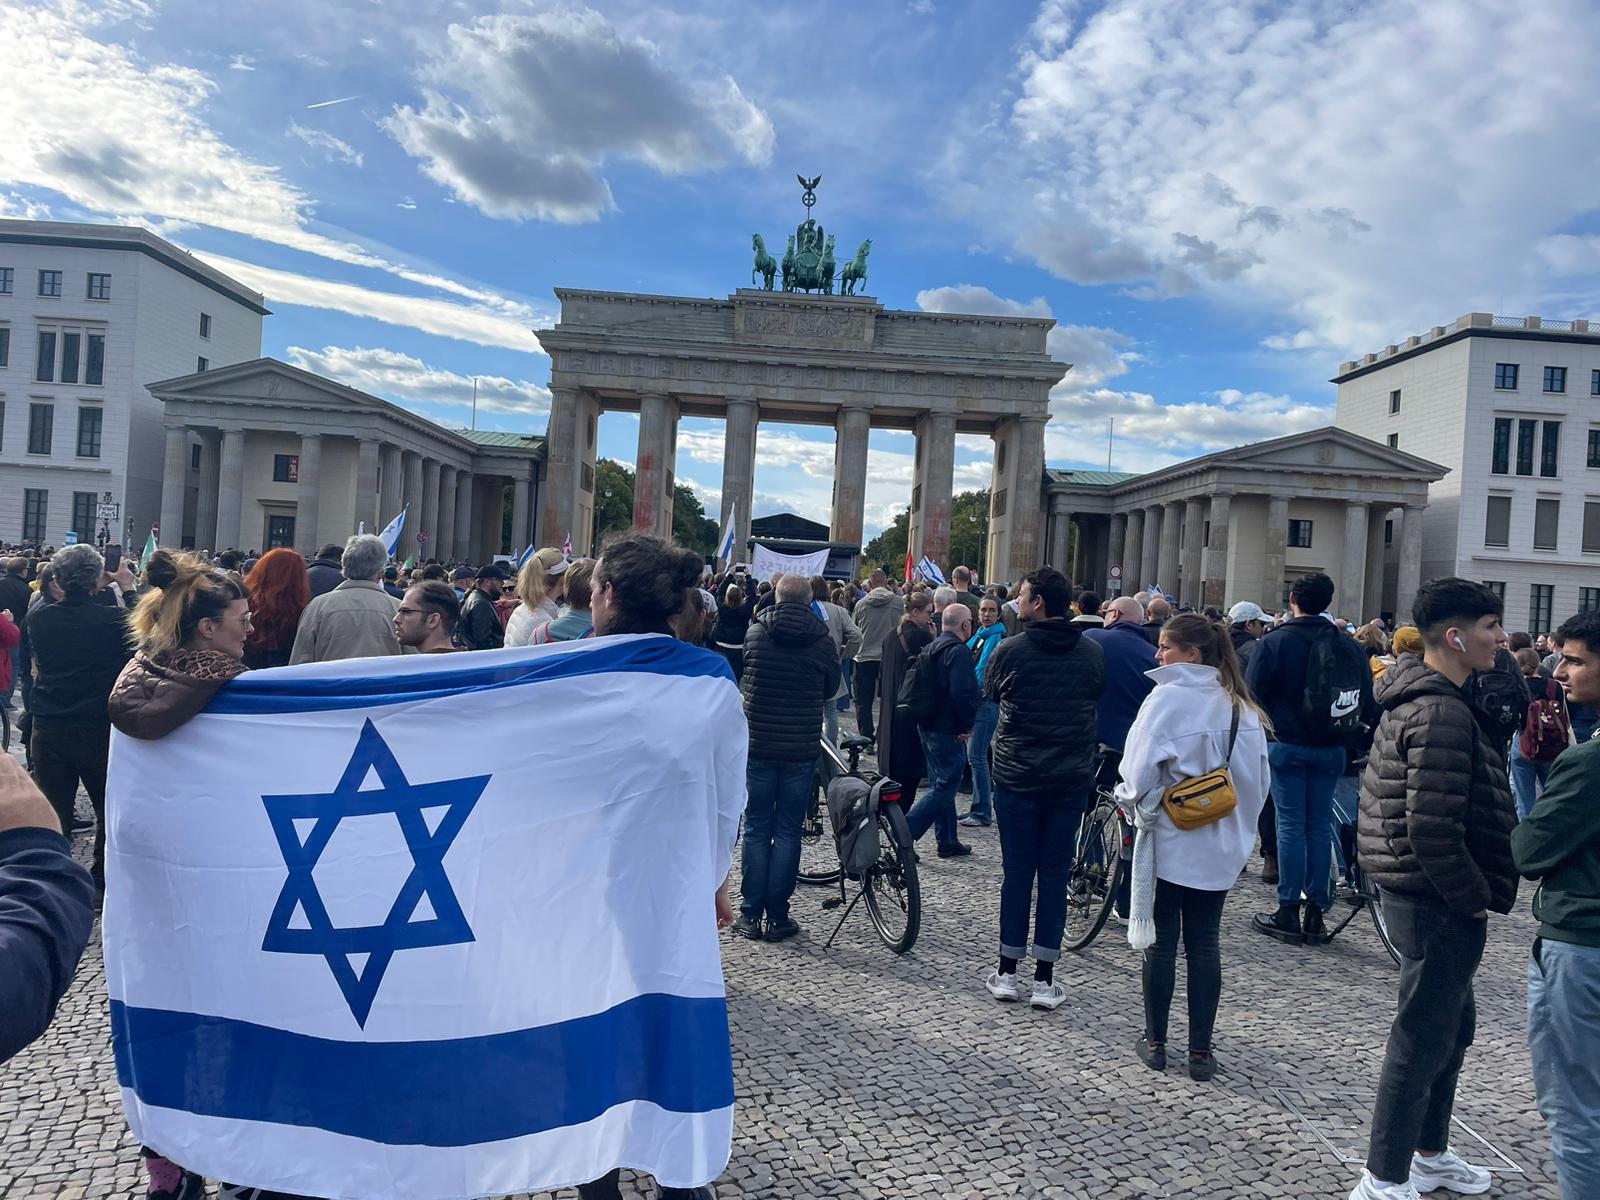 הפגנות פרו-ישראליות בברלין (צילום: רואי אזולאי)